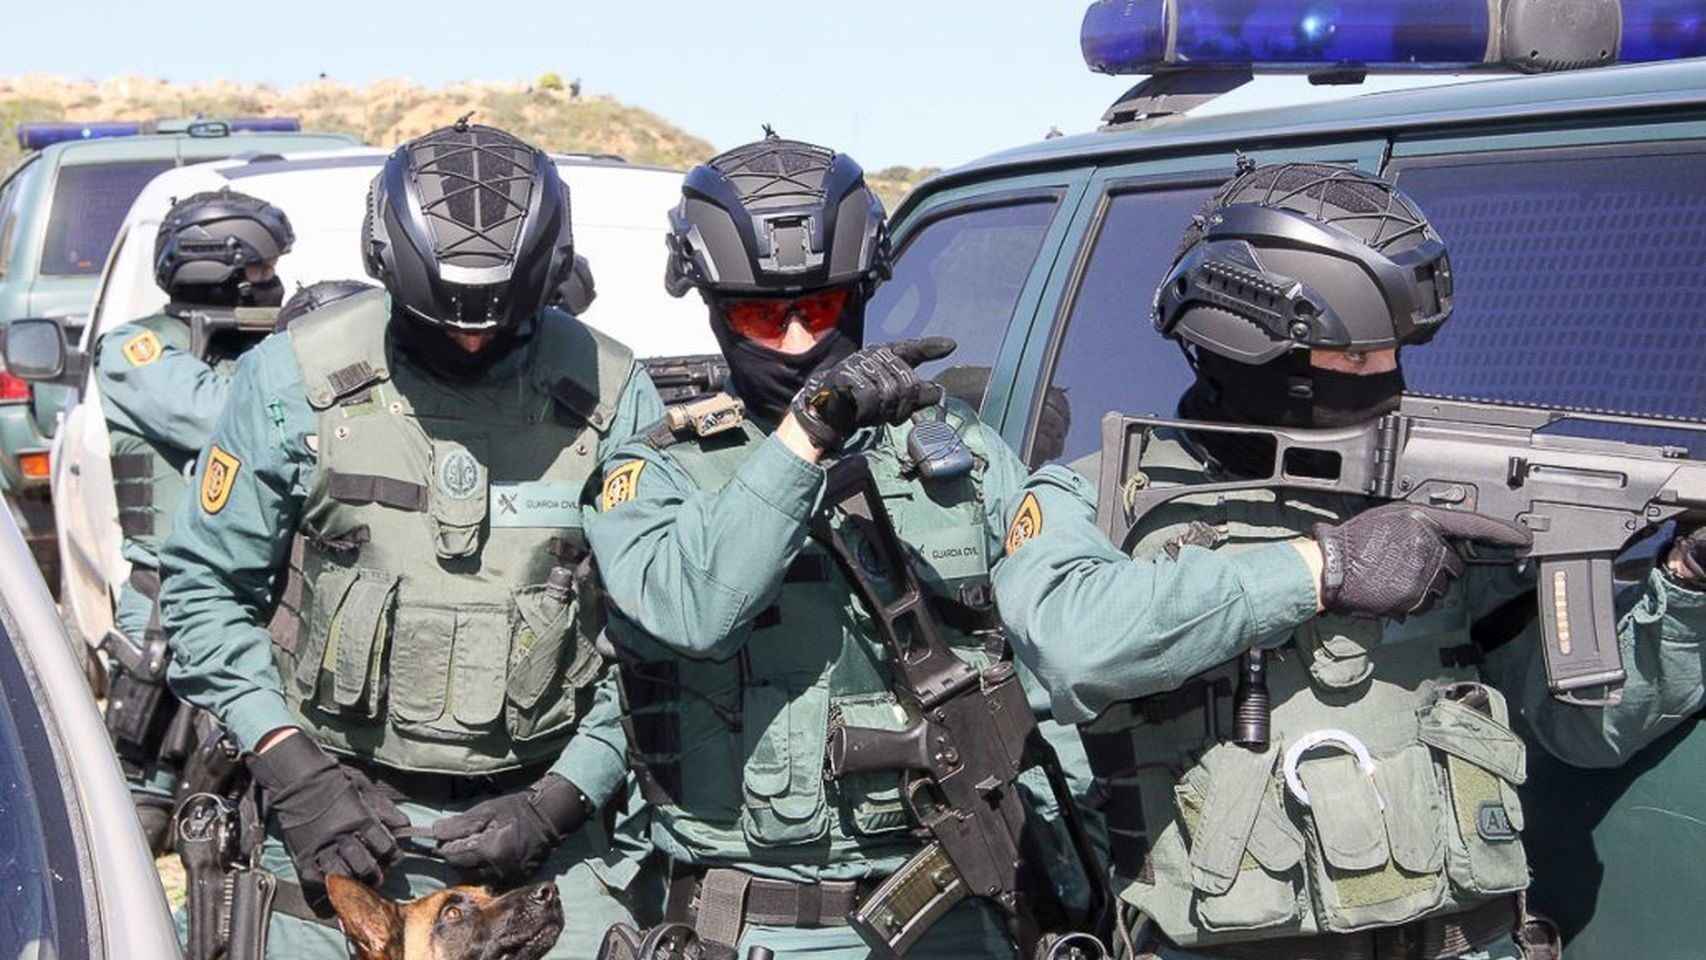 Imagen de archivo de agentes de la Guardia Civil para ilustrar la operación contra el tráfico de drogas / TWITTER